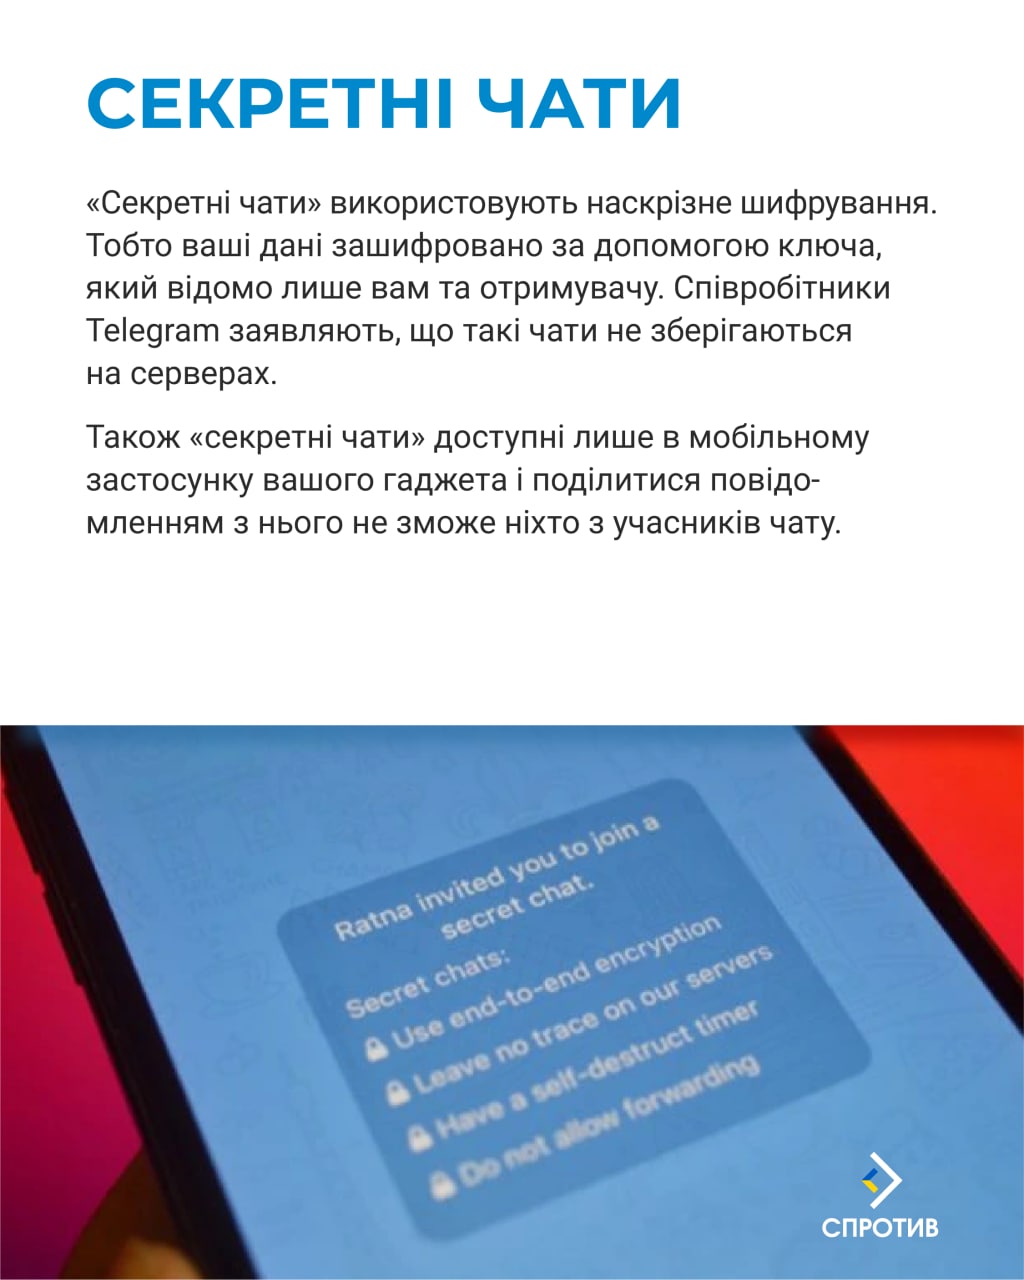 Труха телеграмм украина на русском языке фото 83